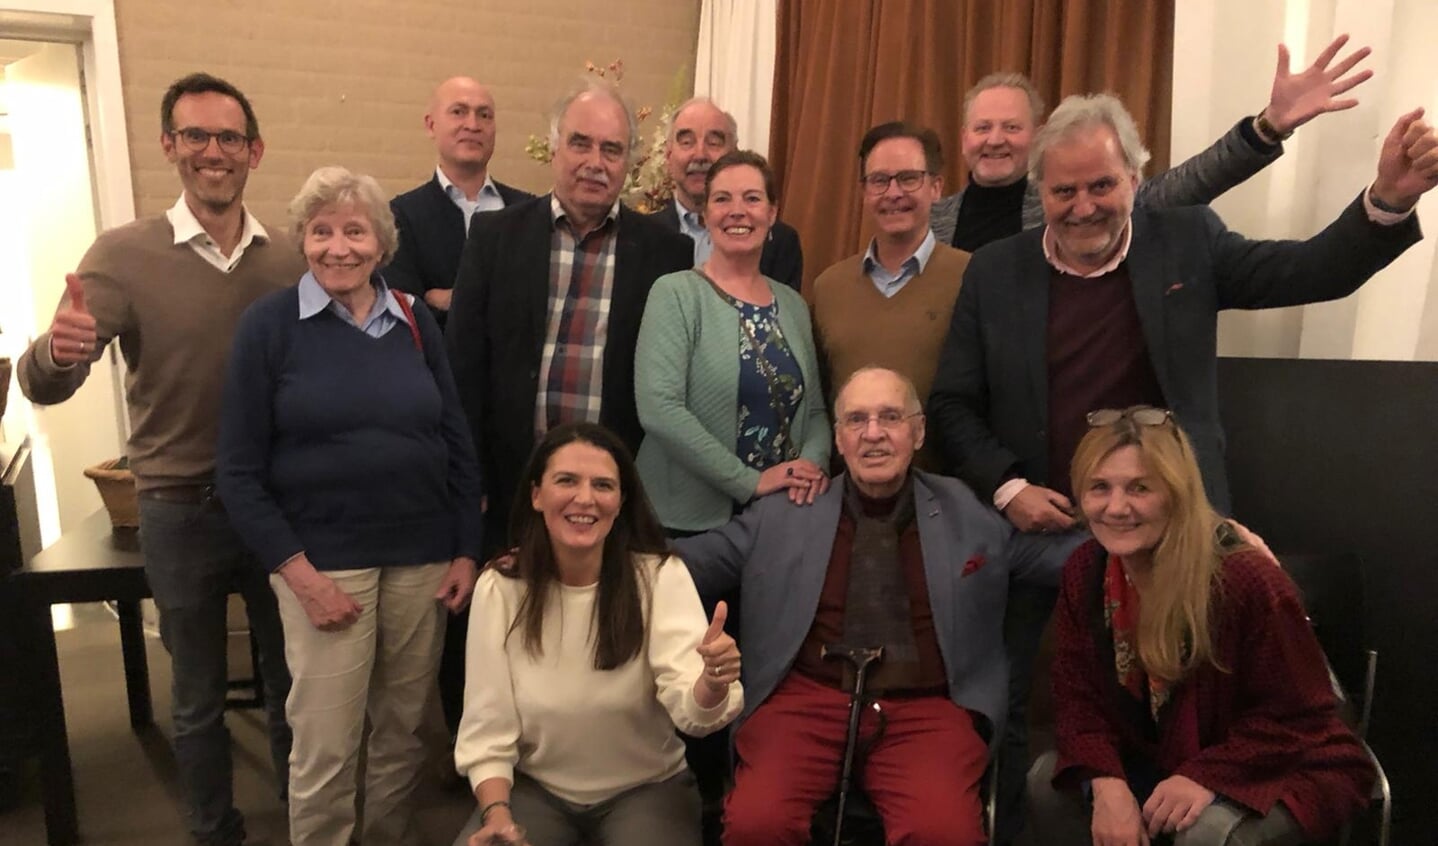 De delegatie van BVHlokaal, de grootste partij van de gemeente Utrechtse Heuvelrug bij de gemeenteraadsverkiezingen in 2022.